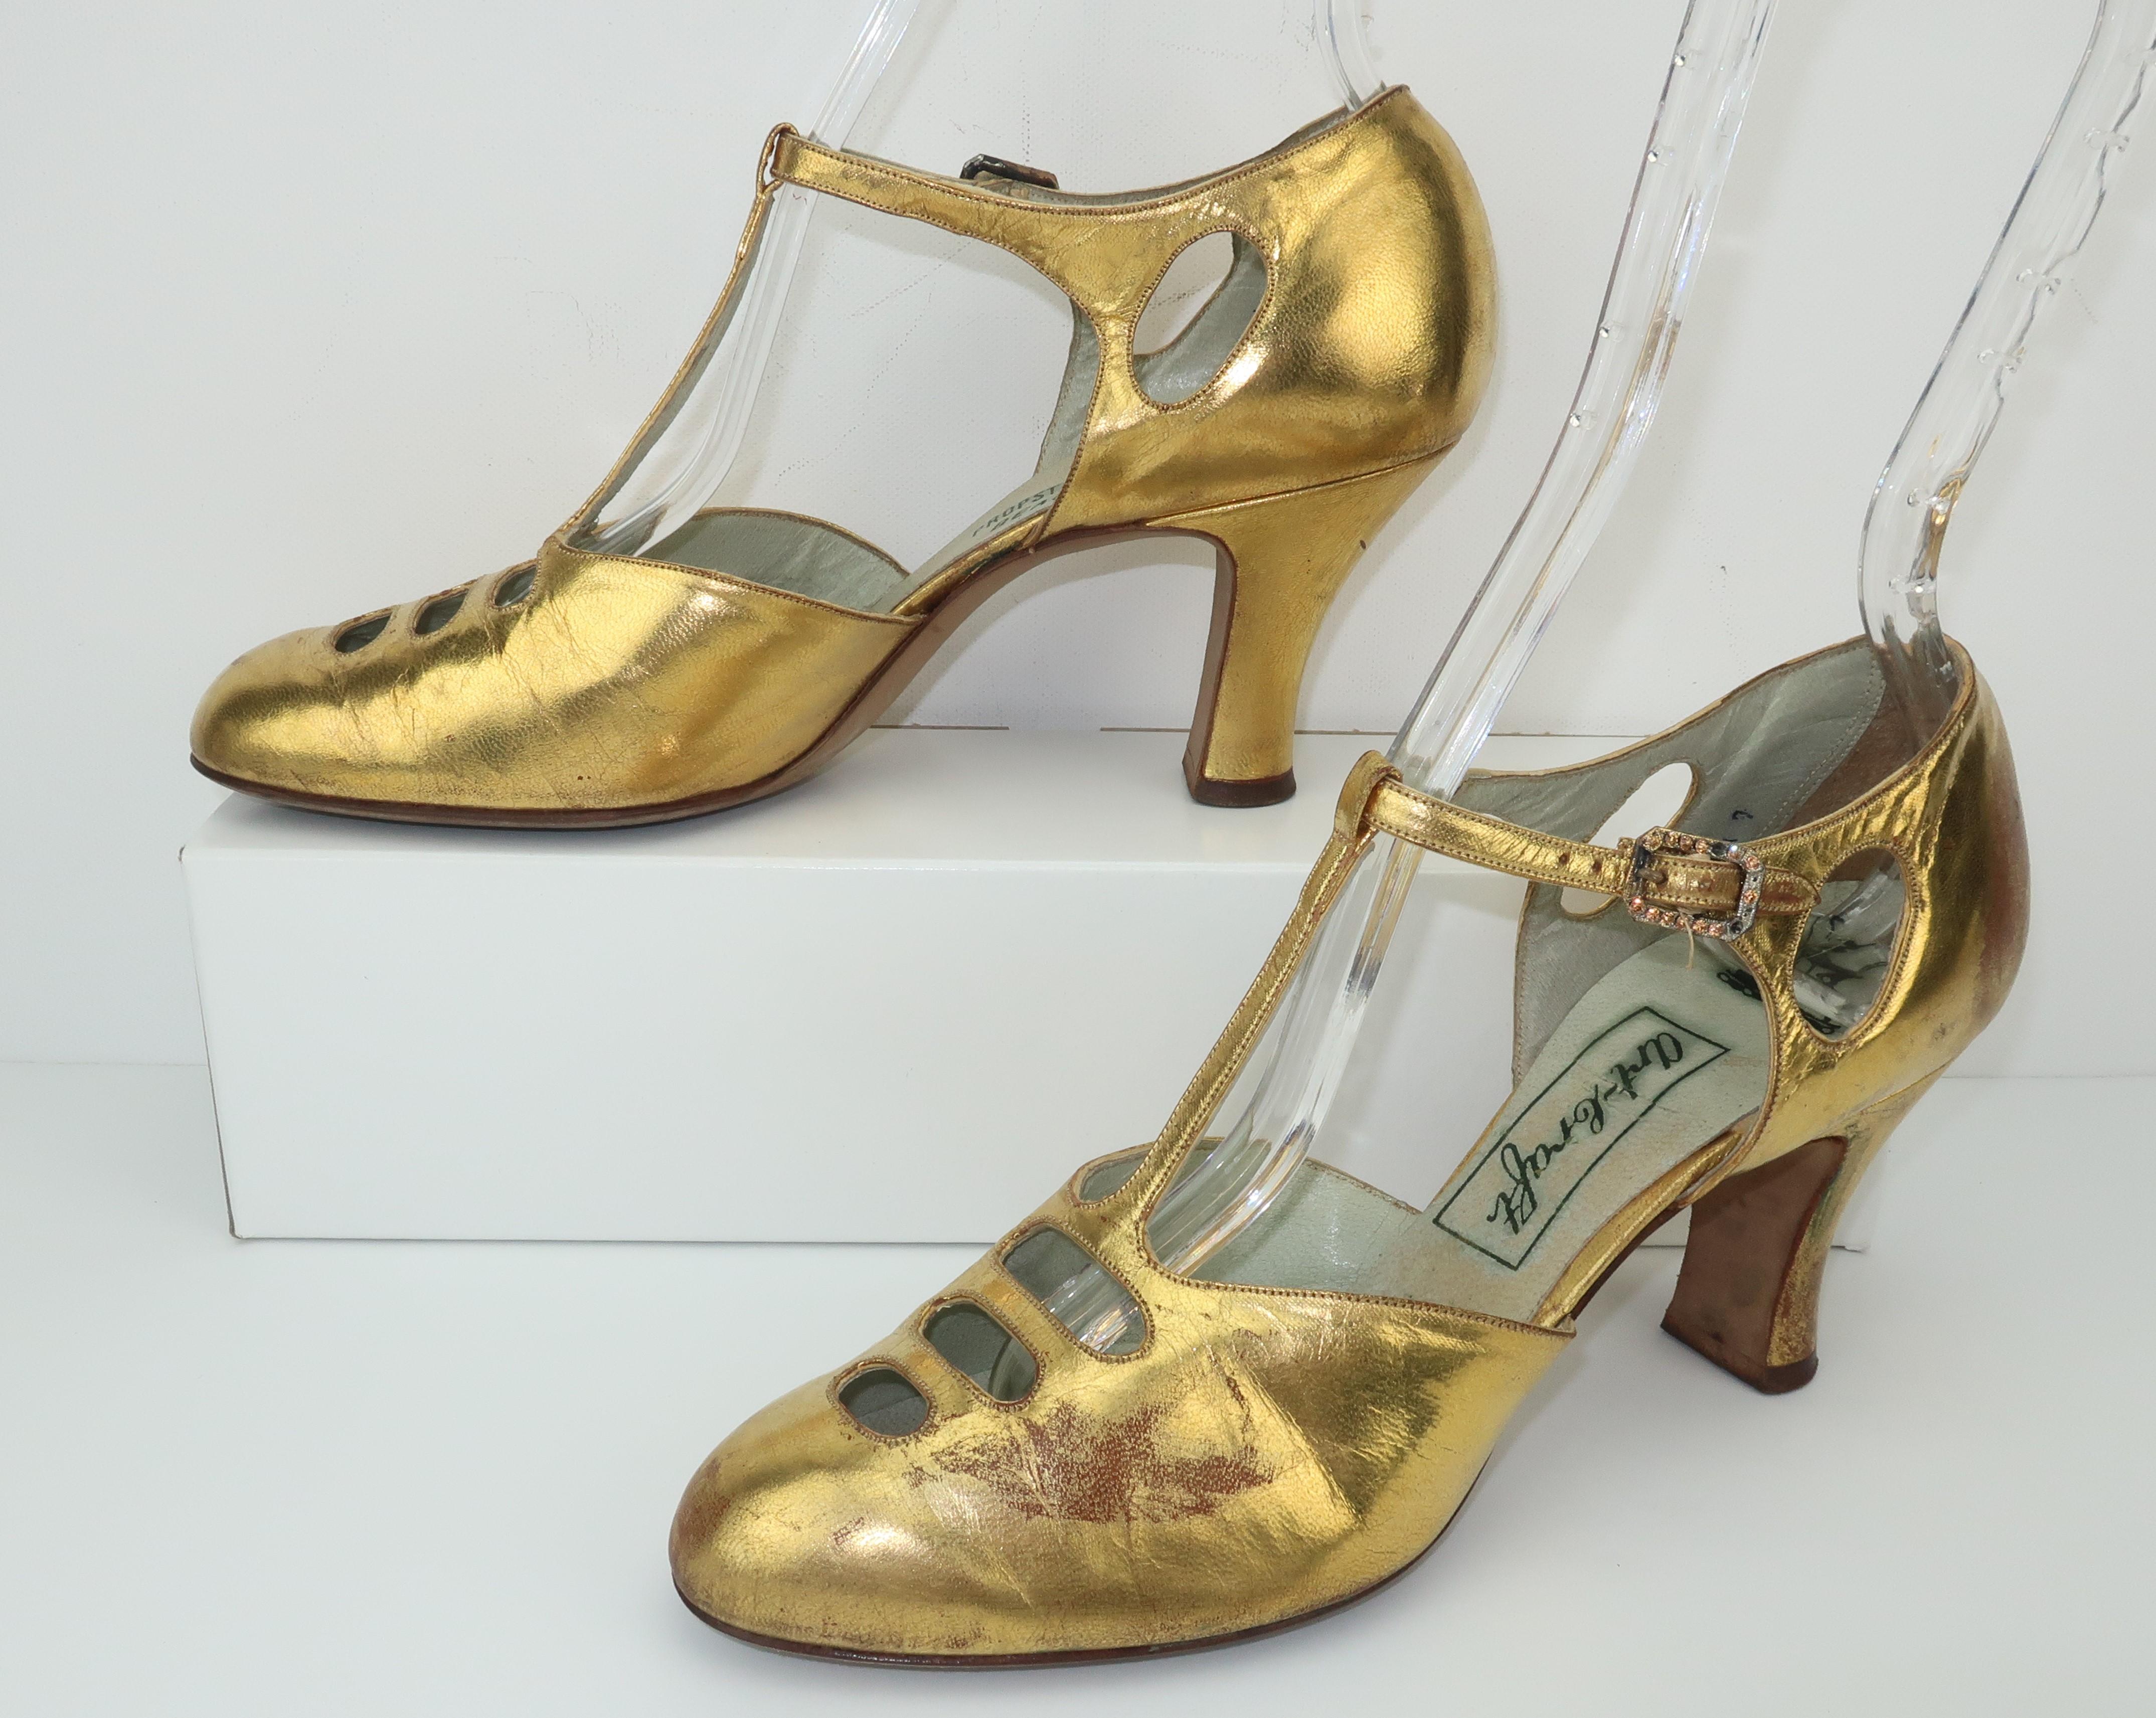 Si seulement les chaussures pouvaient parler ... ces ravissantes chaussures de soirée en cuir doré raconteraient une histoire de glamour et de style des années 1930.  Le design classique Art déco de la lanière en T est rehaussé par des découpes